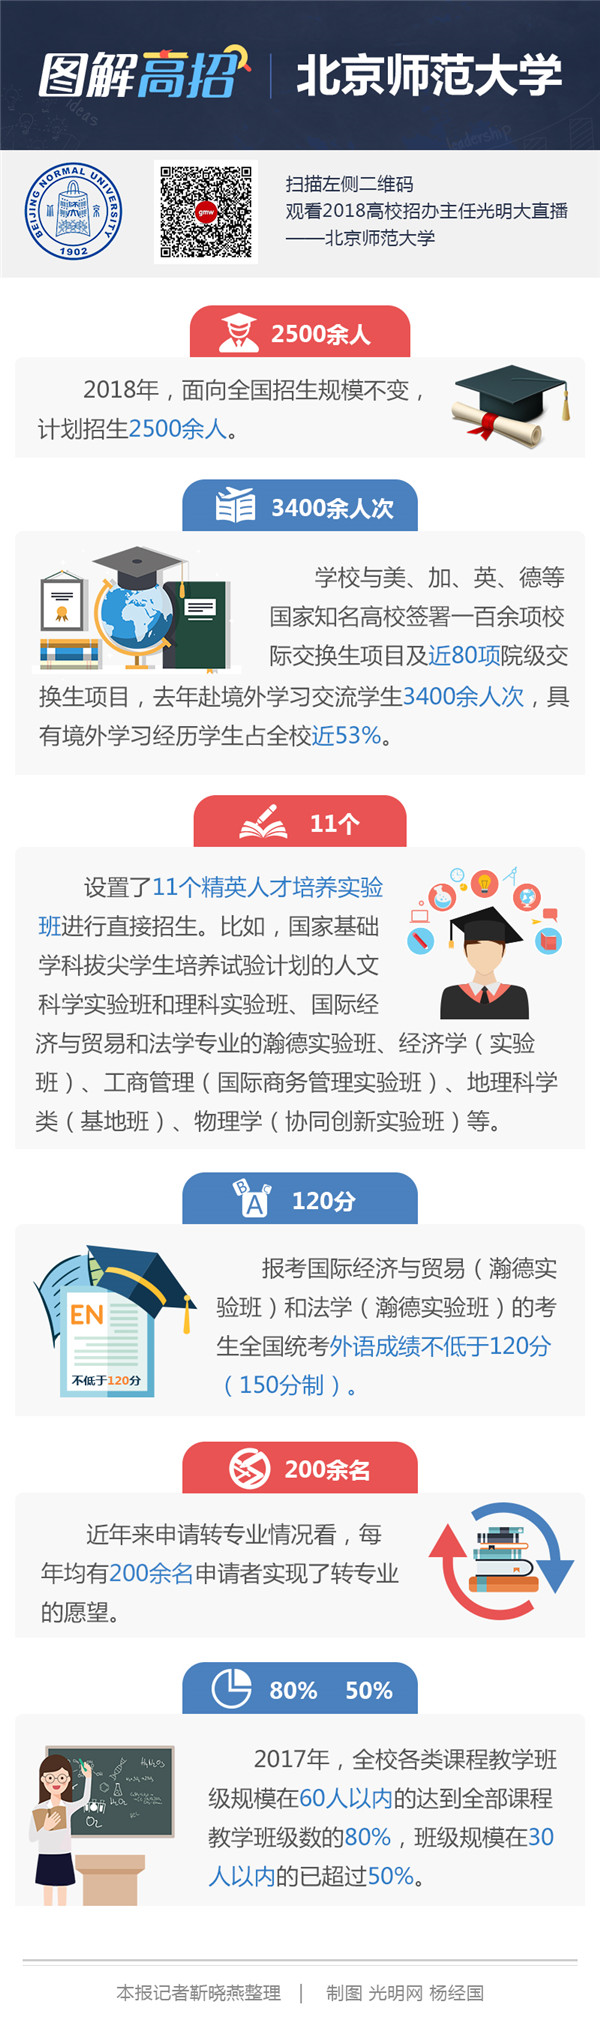 北京师范大学：学生转专业不设转出门槛